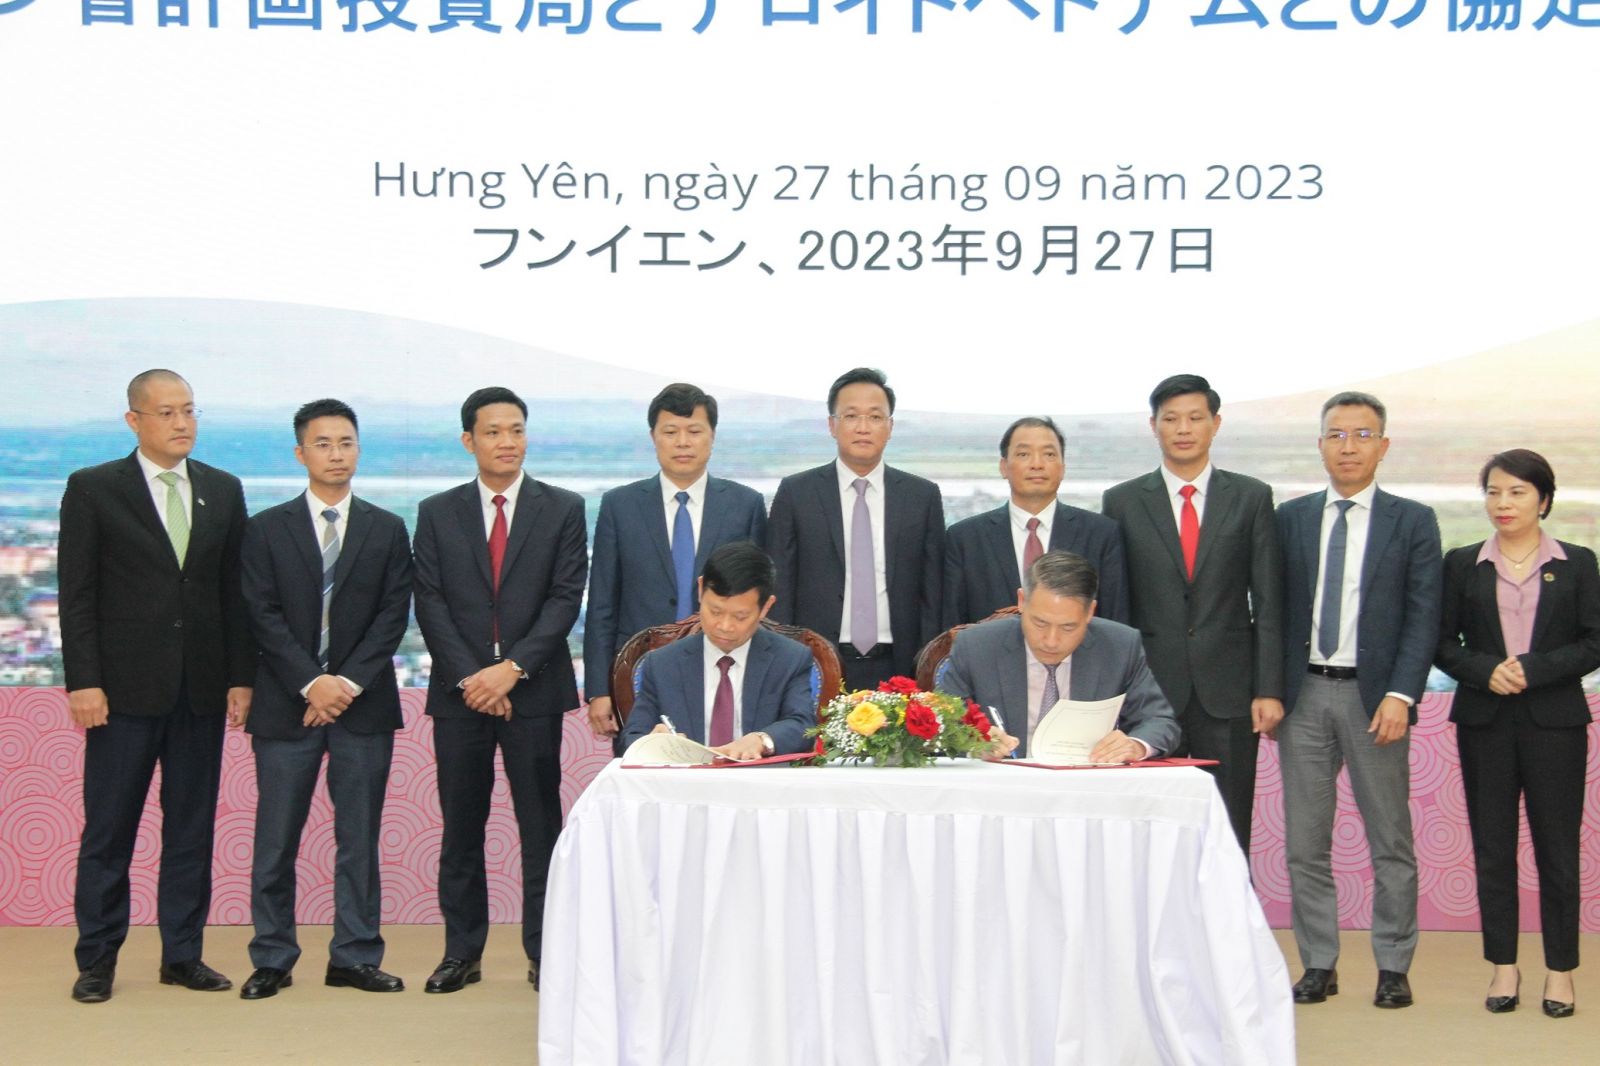 Lễ ký kết hợp tác giữa Công ty Deloite Việt Nam với sở Kế hoạch và Đầu tư tỉnh Hưng Yên tháng 9/2023. Ảnh: Vũ Phường